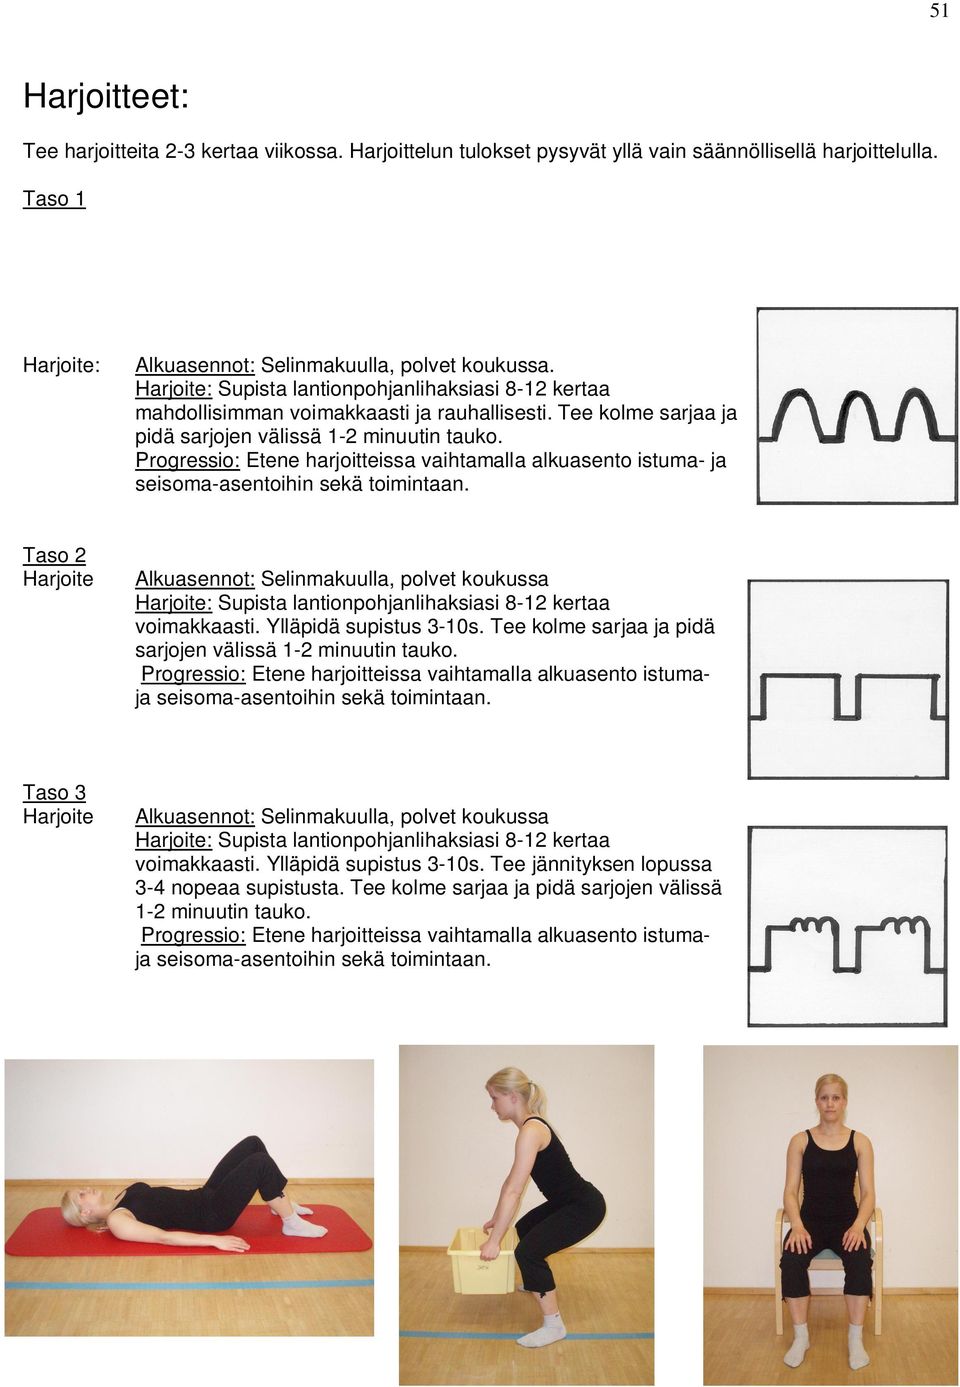 Progressio: Etene harjoitteissa vaihtamalla alkuasento istuma- ja seisoma-asentoihin sekä toimintaan.